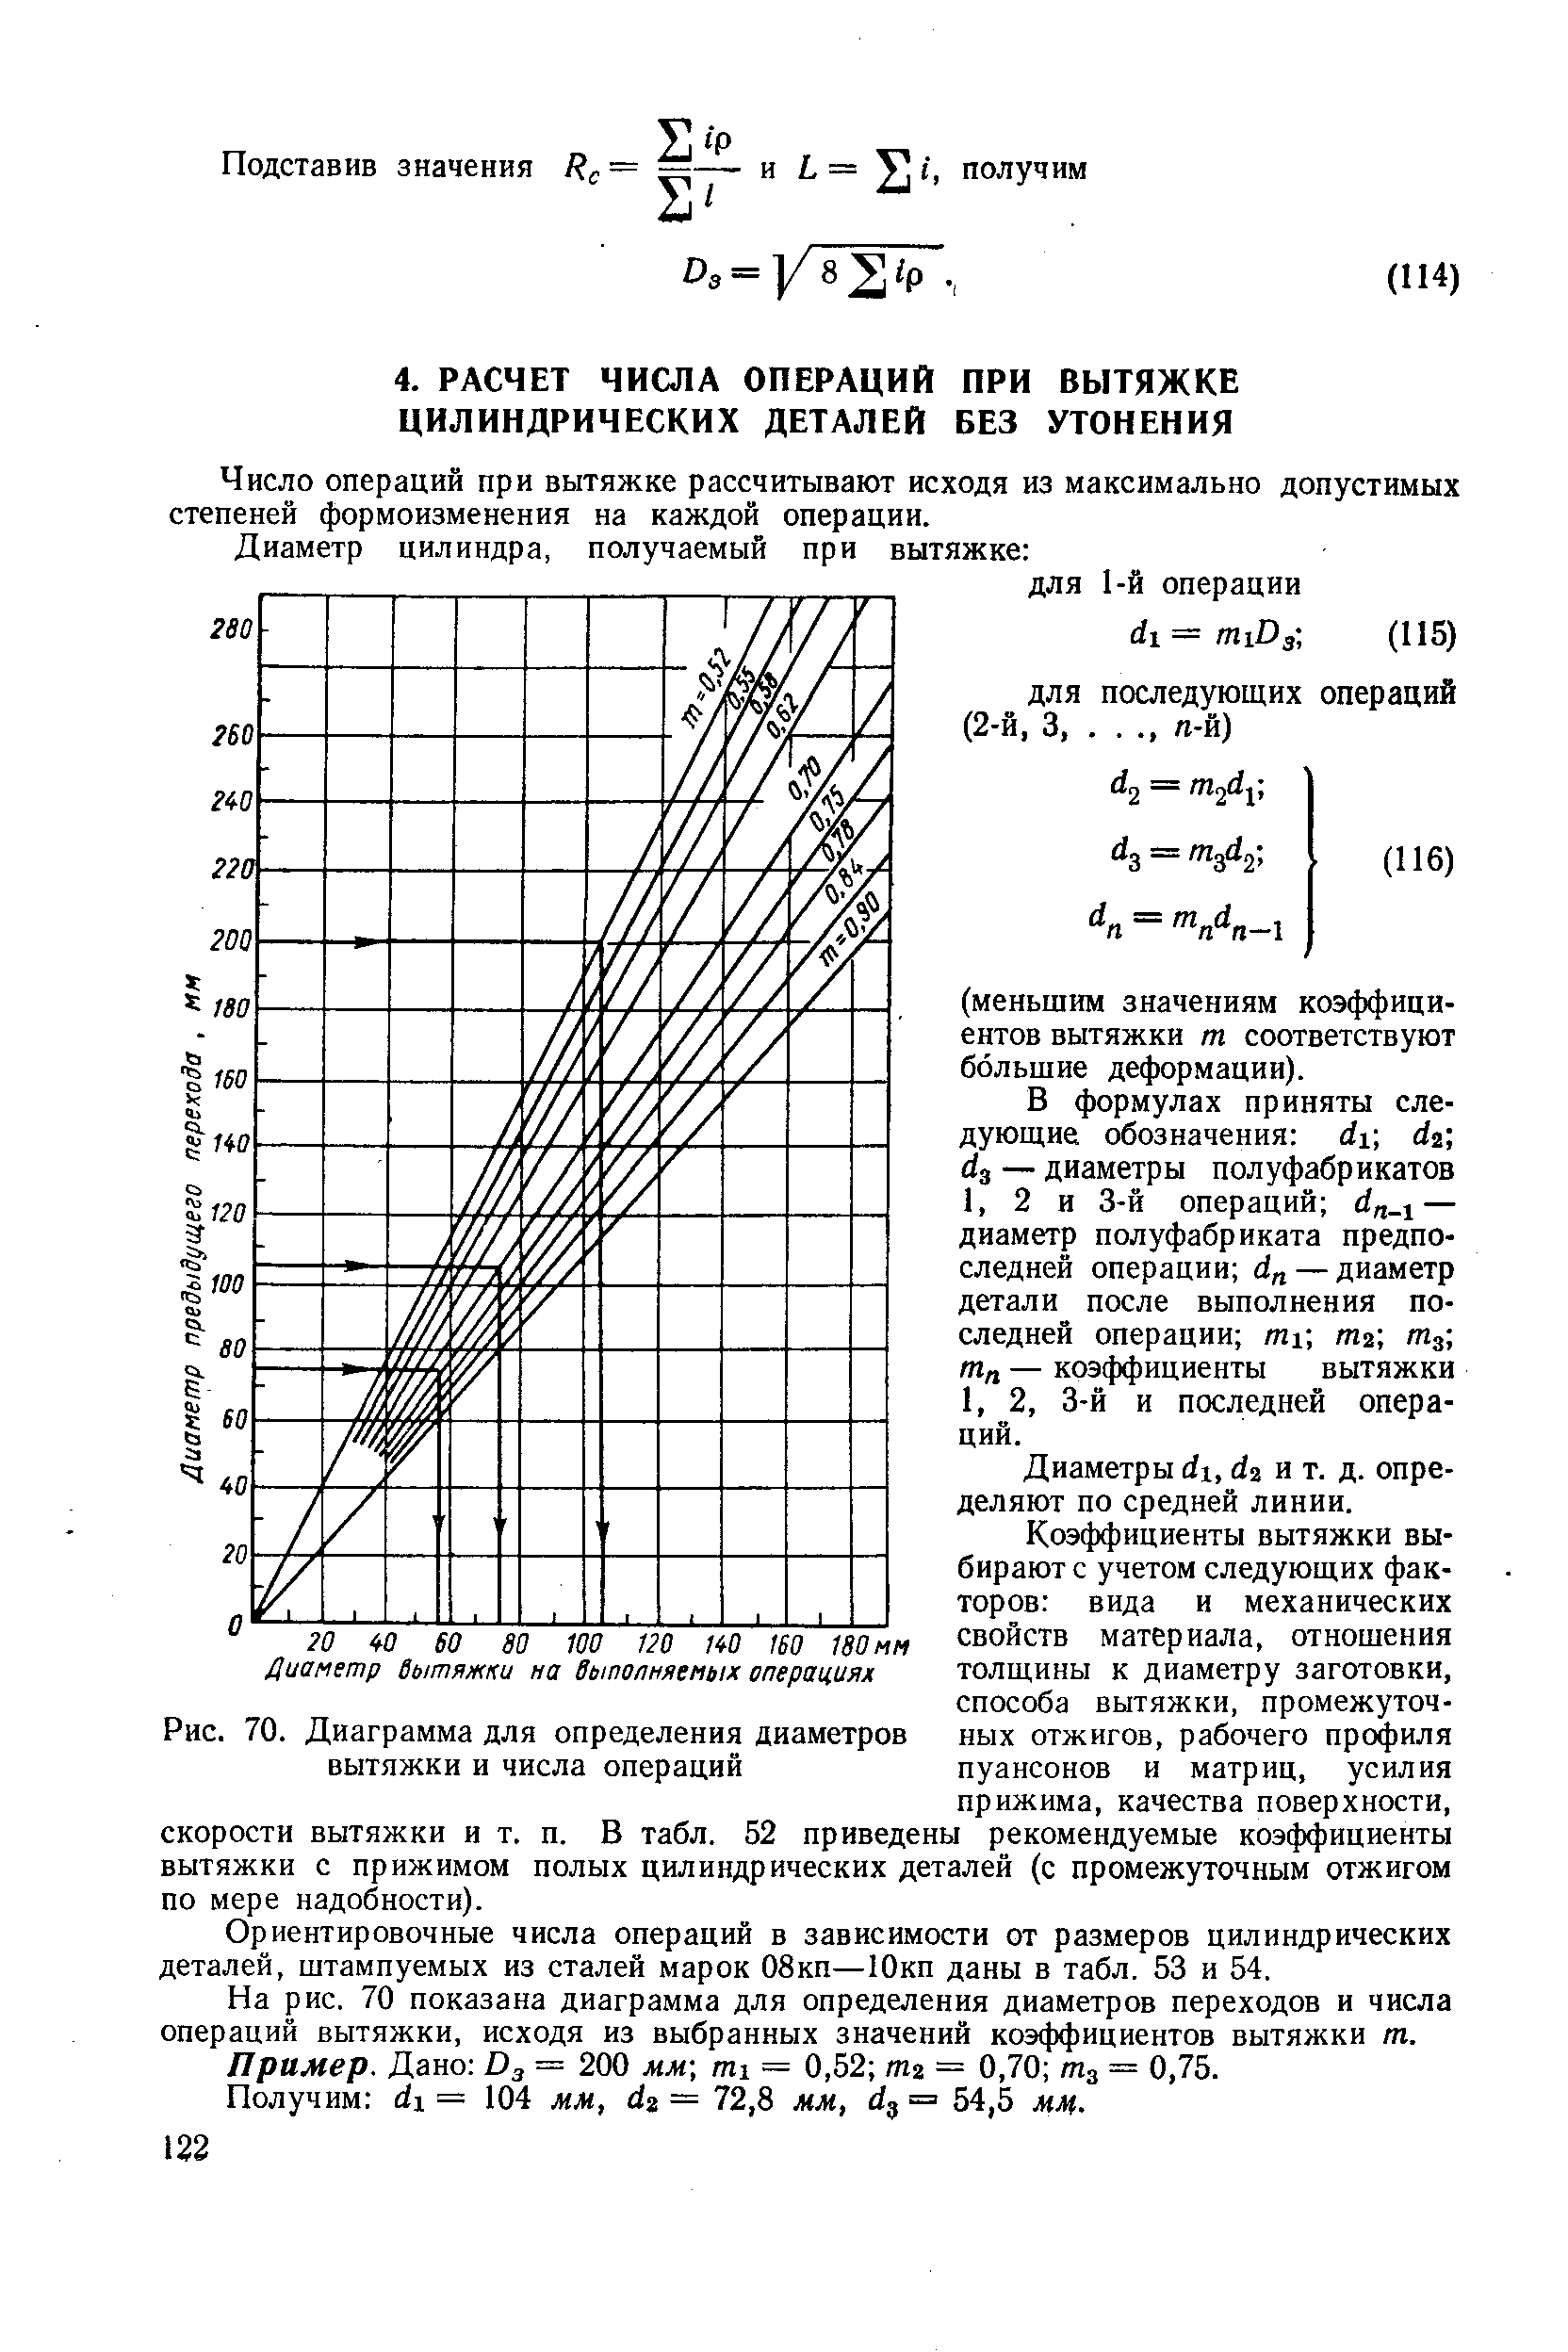 Рис. 70. Диаграмма для определения диаметров вытяжки и числа операций
